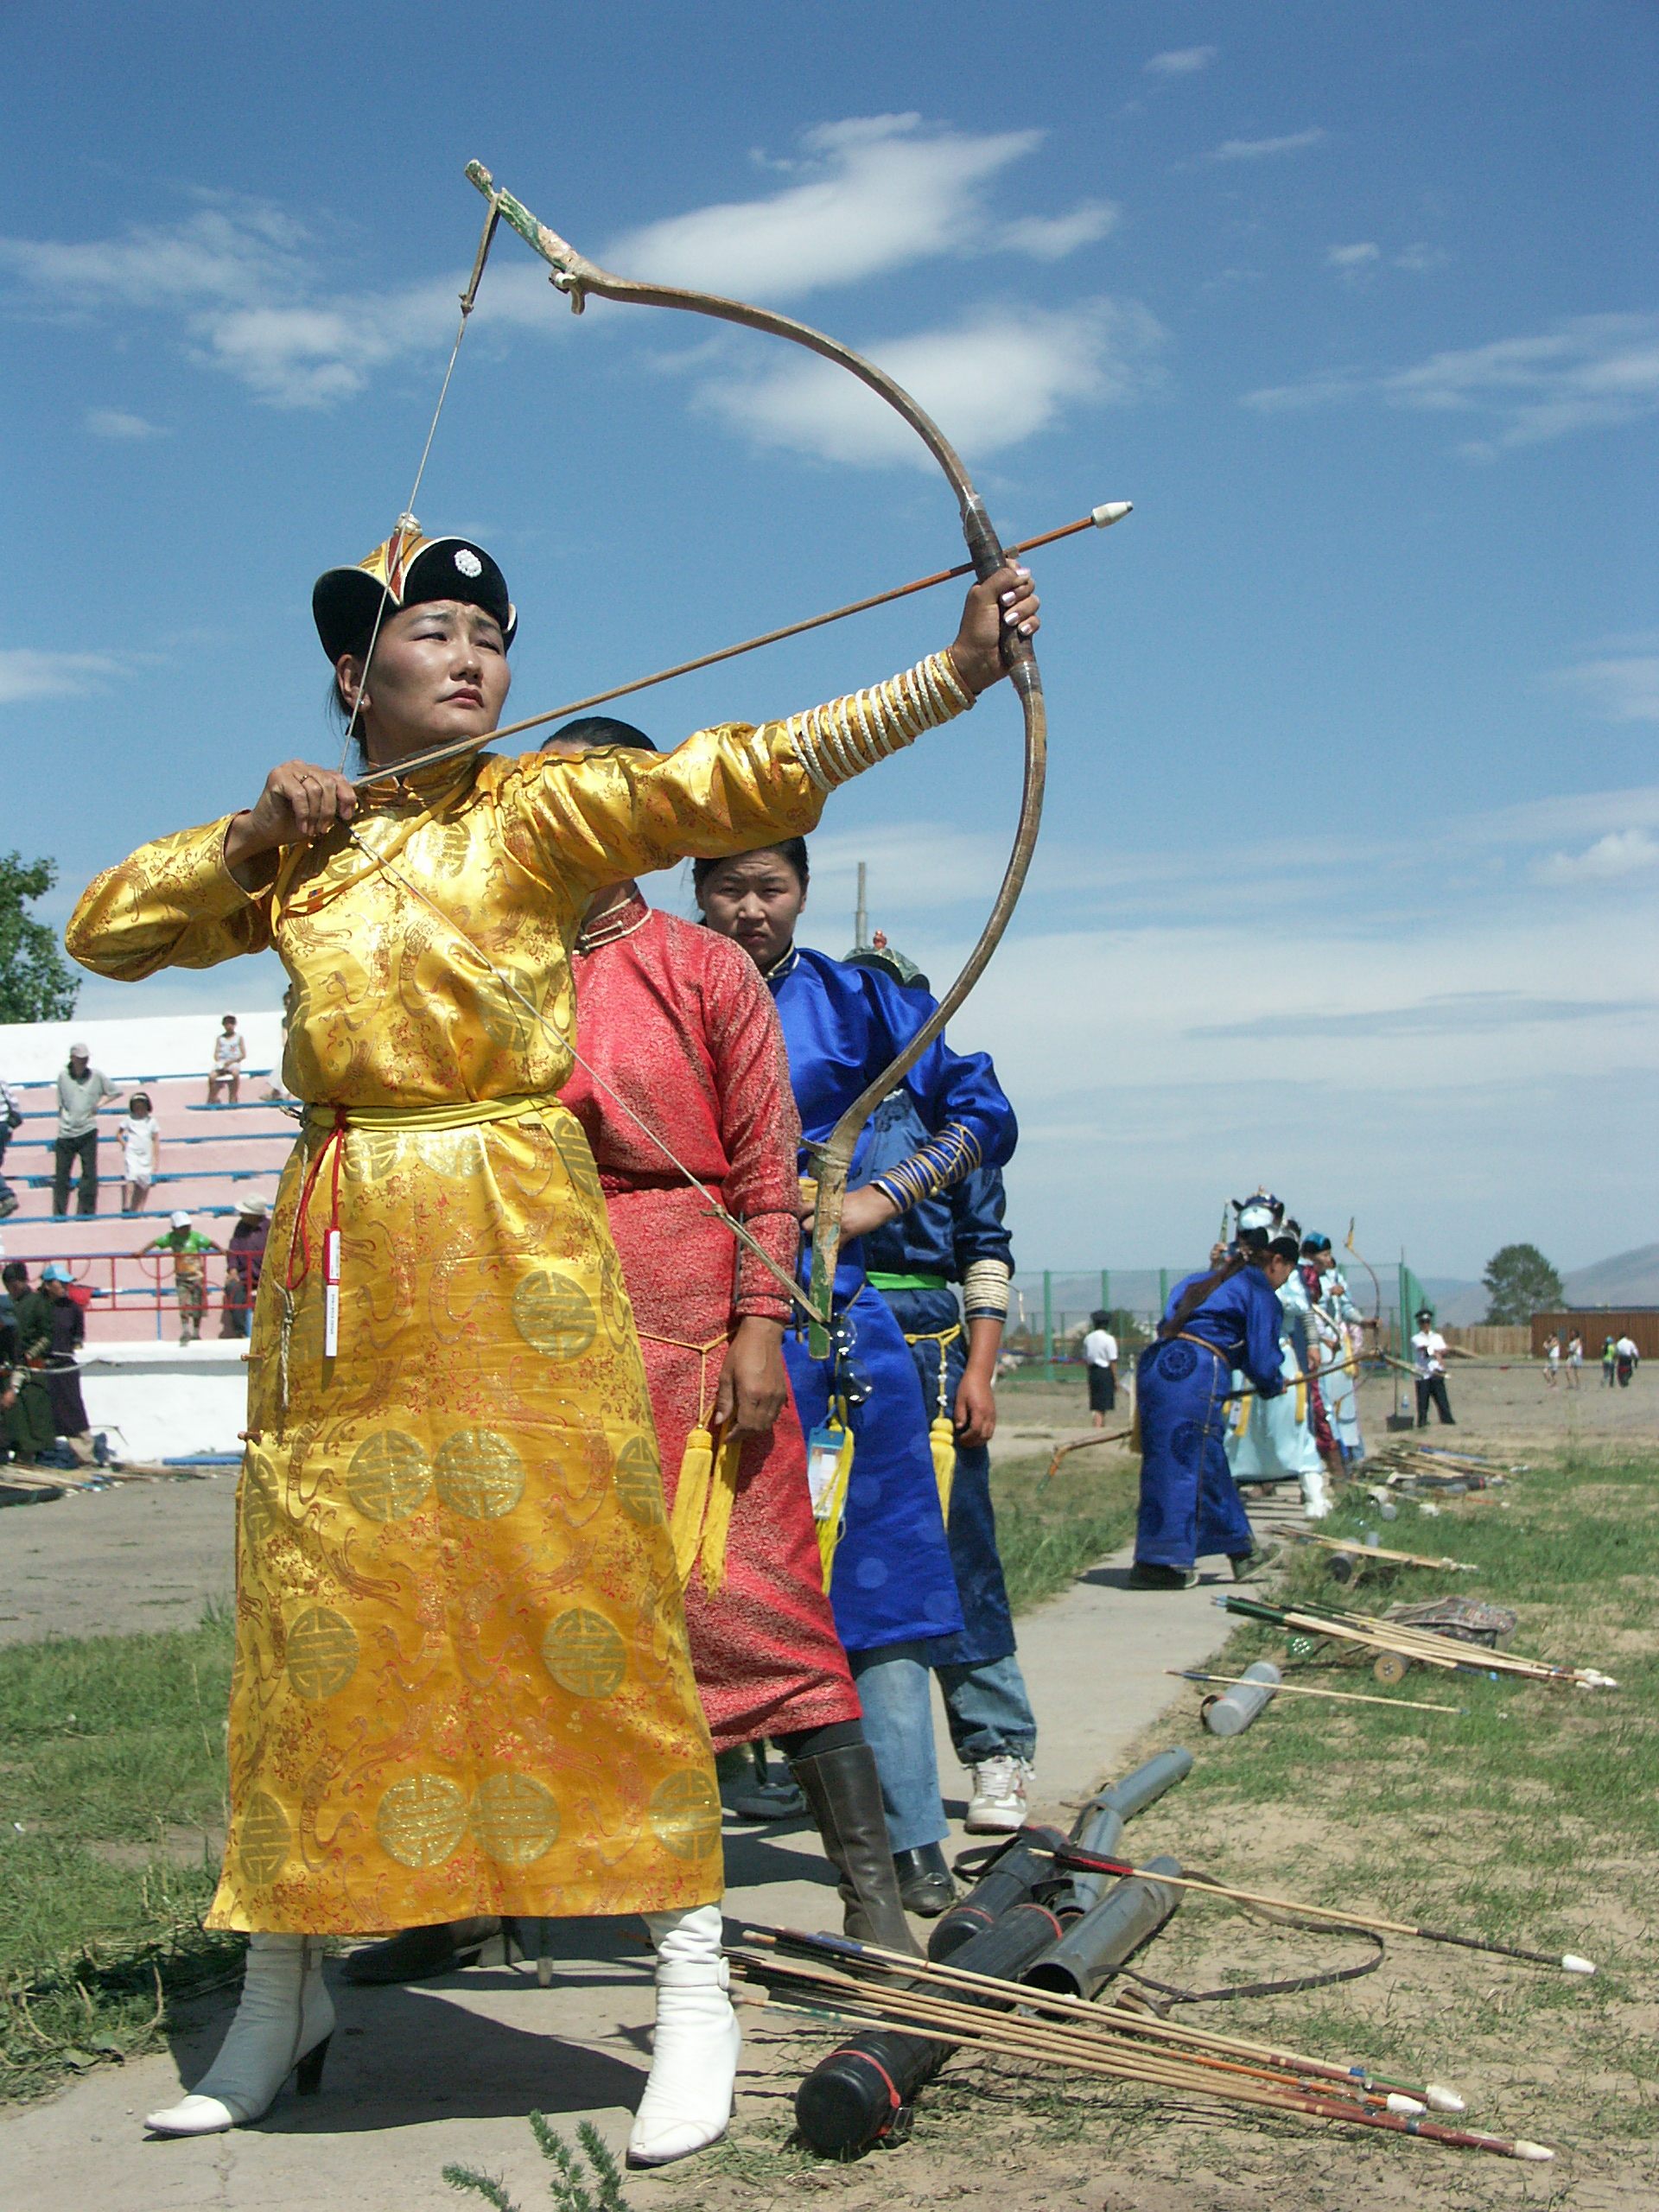 На ежегодных играх Наадам в Монголии женщины соревнуются в стрельбе из лука и скачках вместе с соперниками-мужчинами.